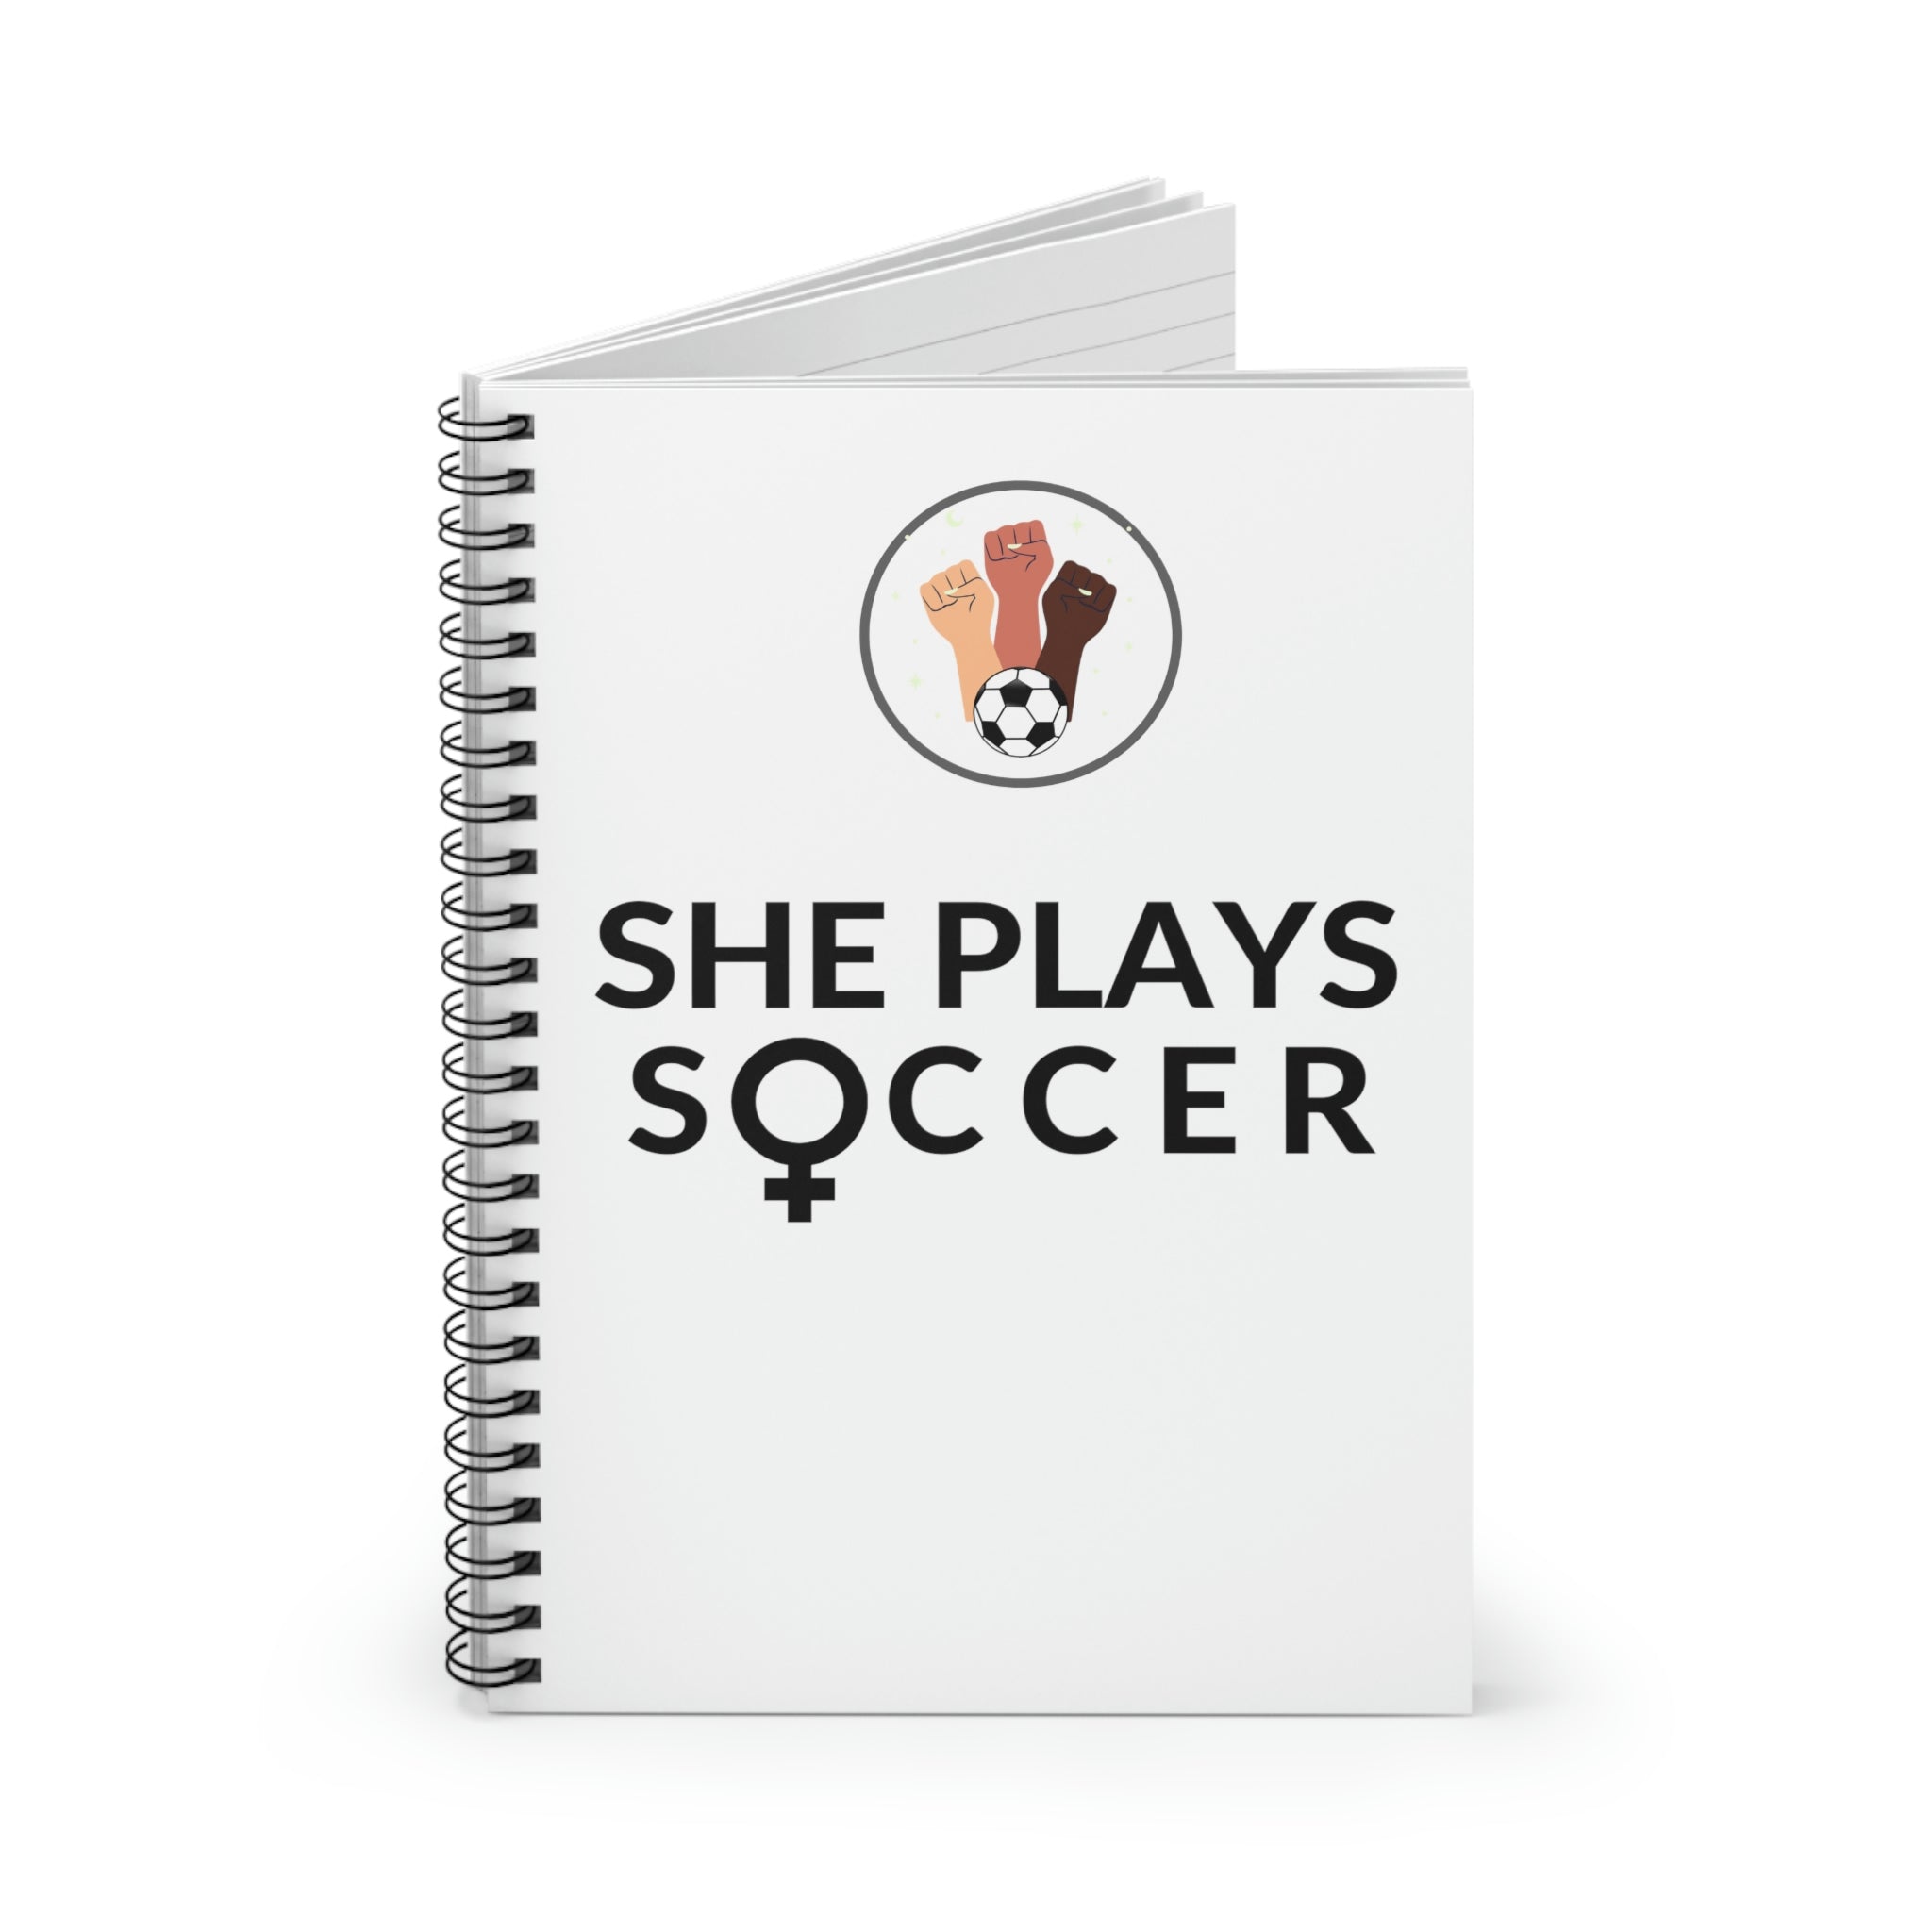 She Plays Soccer - Goal Setting Journal